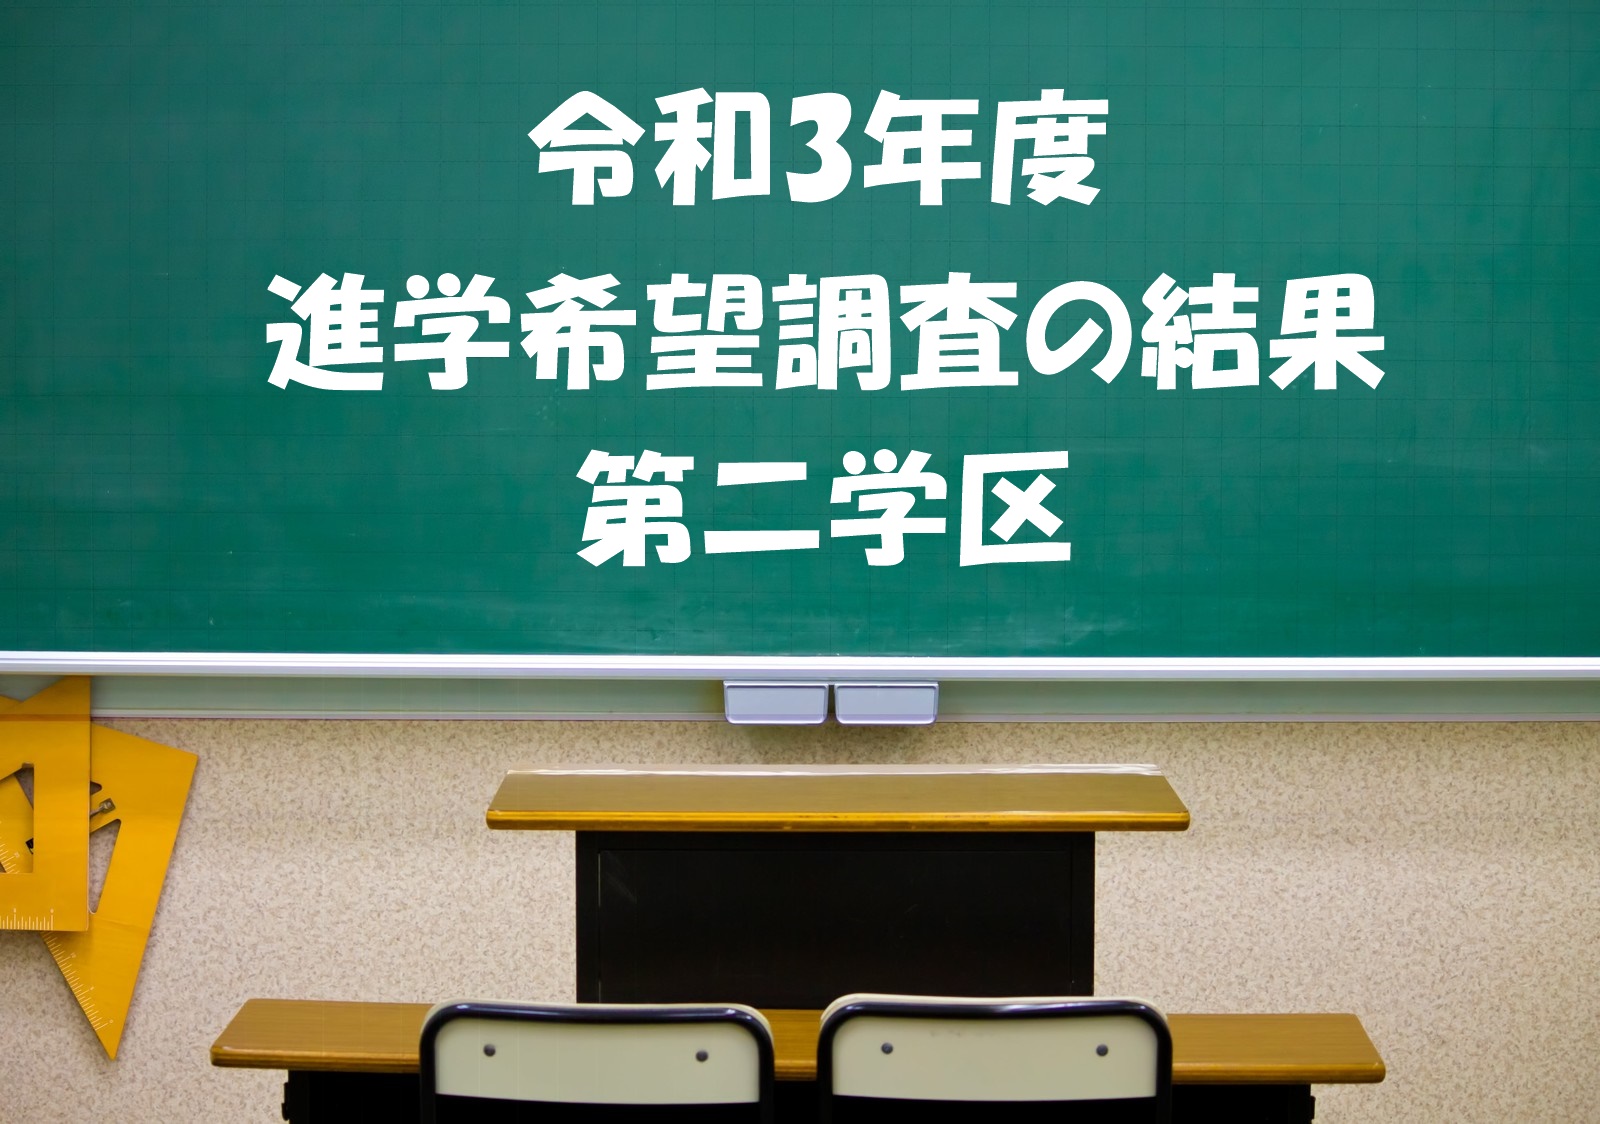 21年度 令和3年度 第二学区進学希望調査の結果 兵庫県公立高校入試情報ネット 兵庫県公立高校入試情報ネット